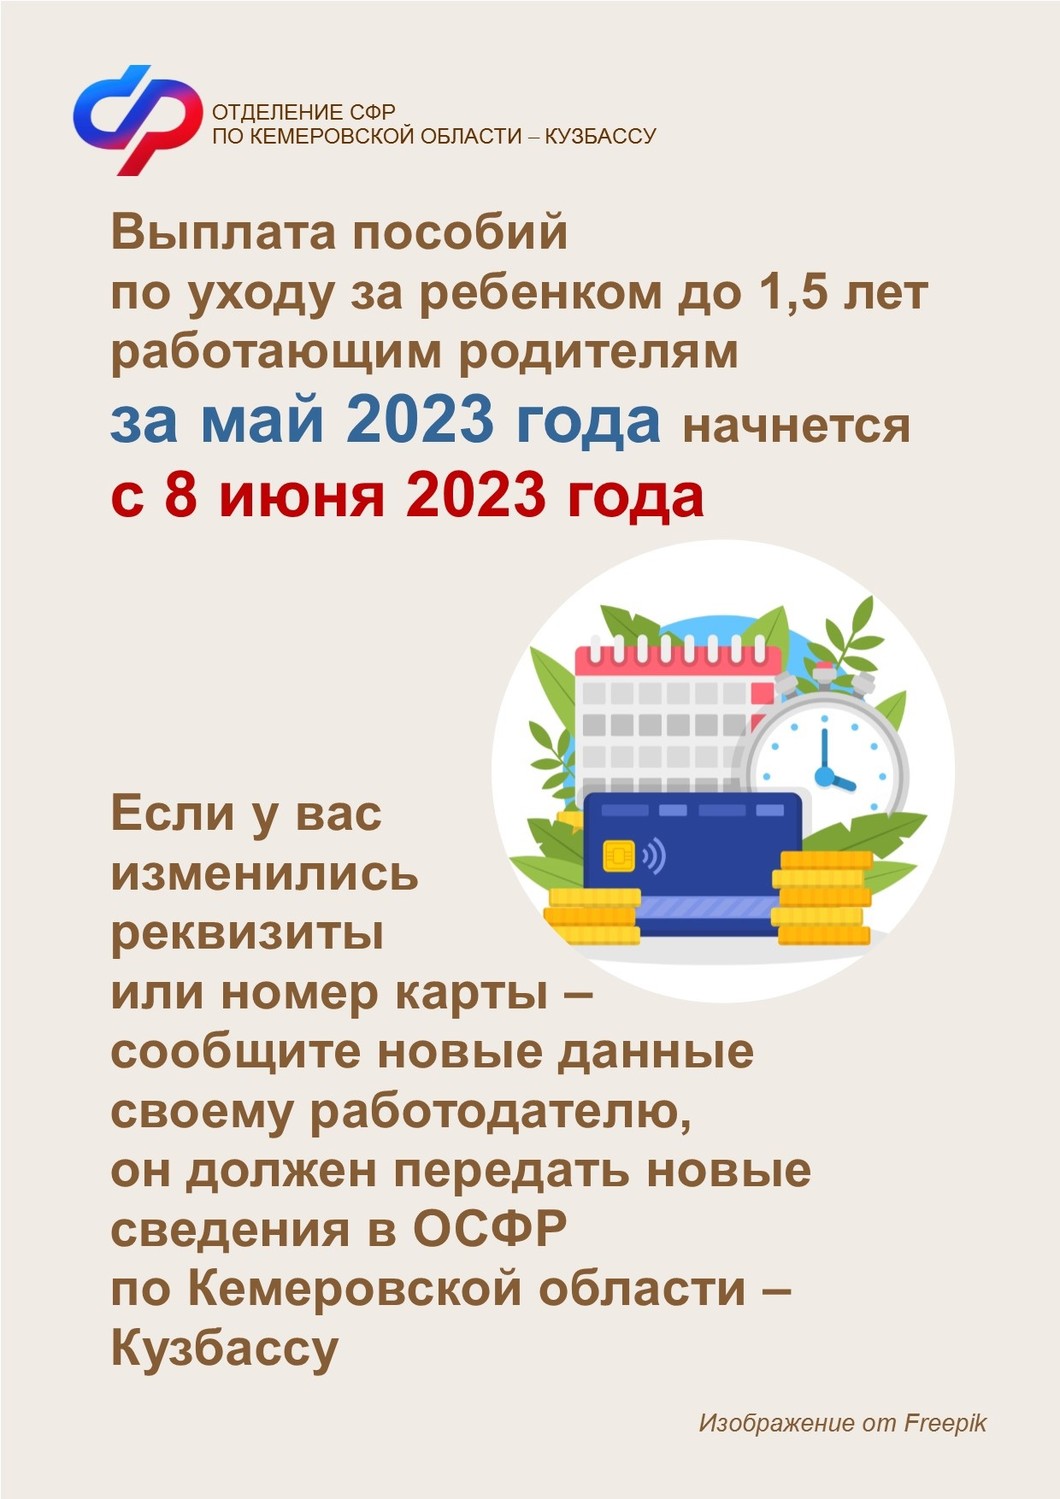 Выплата пособий по уходу за ребенком до 1,5 лет работающим родителям за май 2023 года